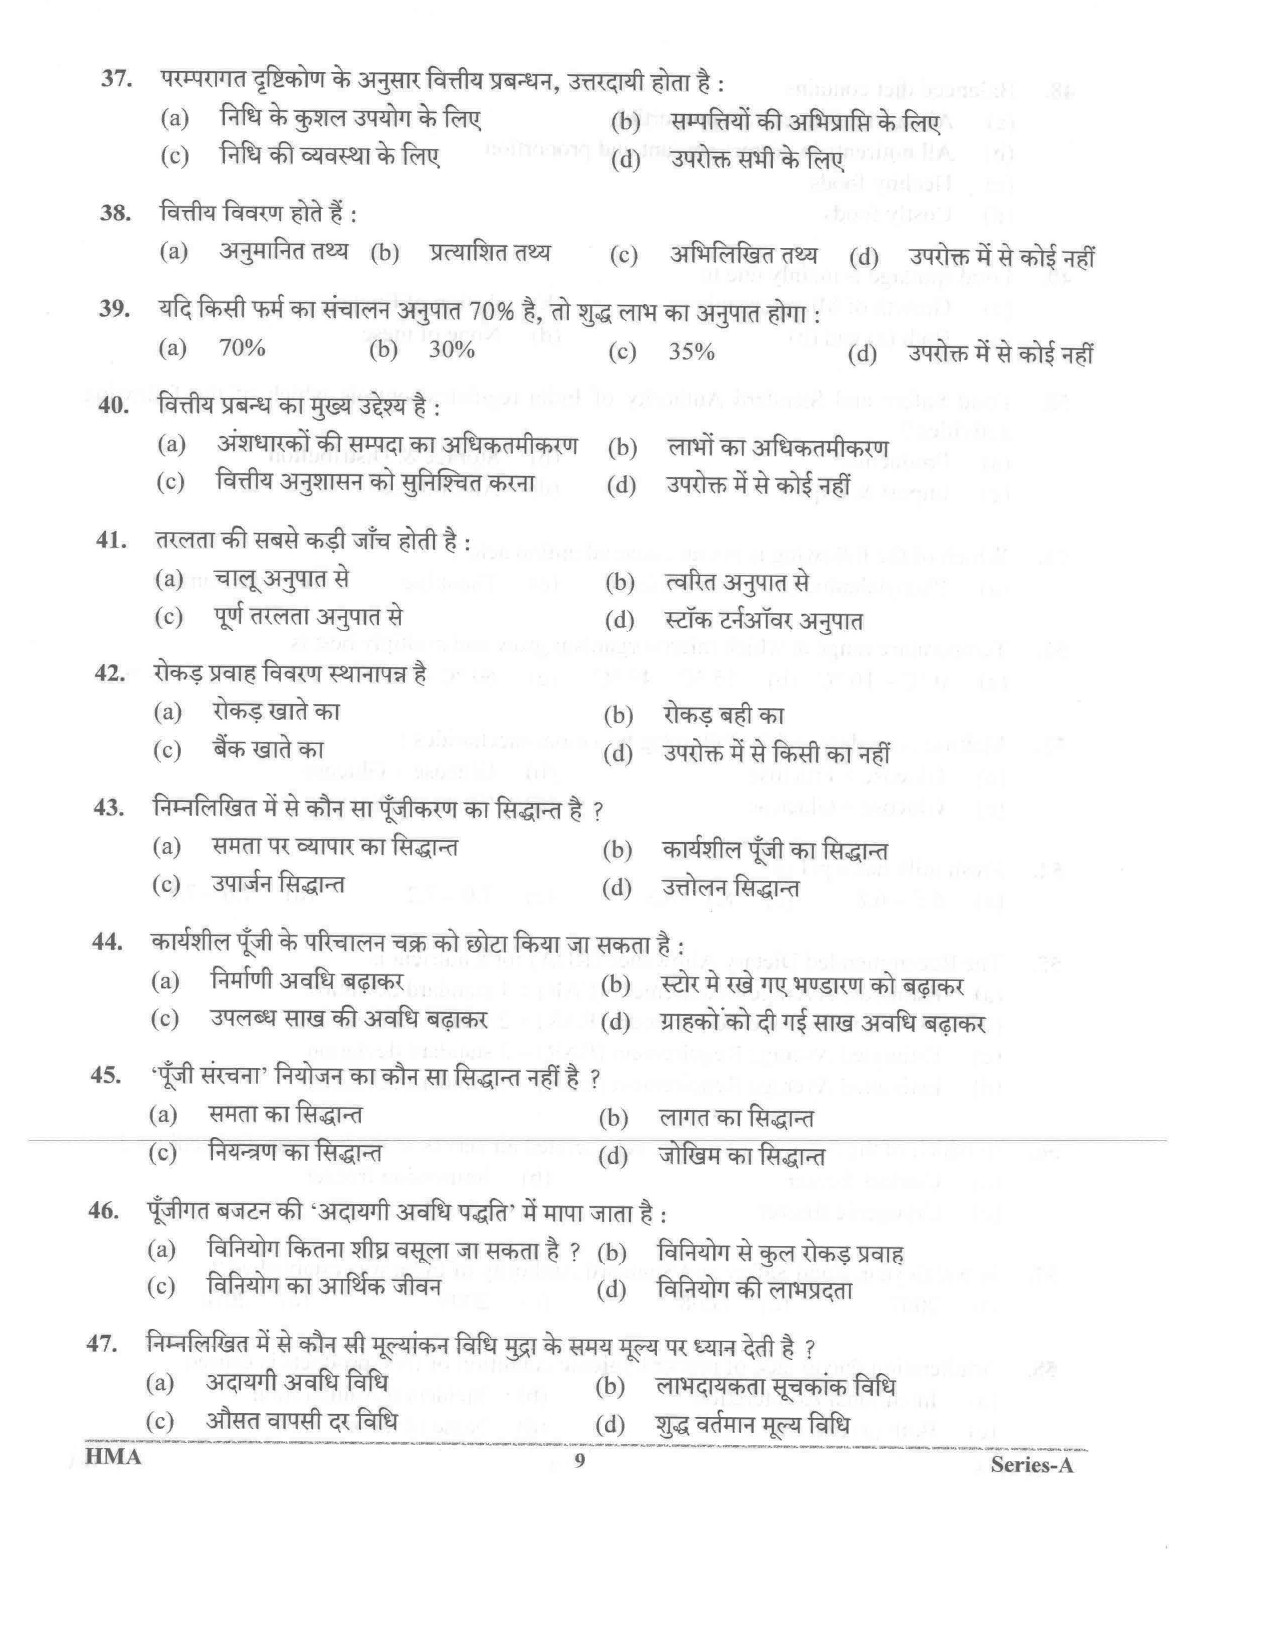 UKPSC Vyawasthapak Examination Question Paper 2021 8